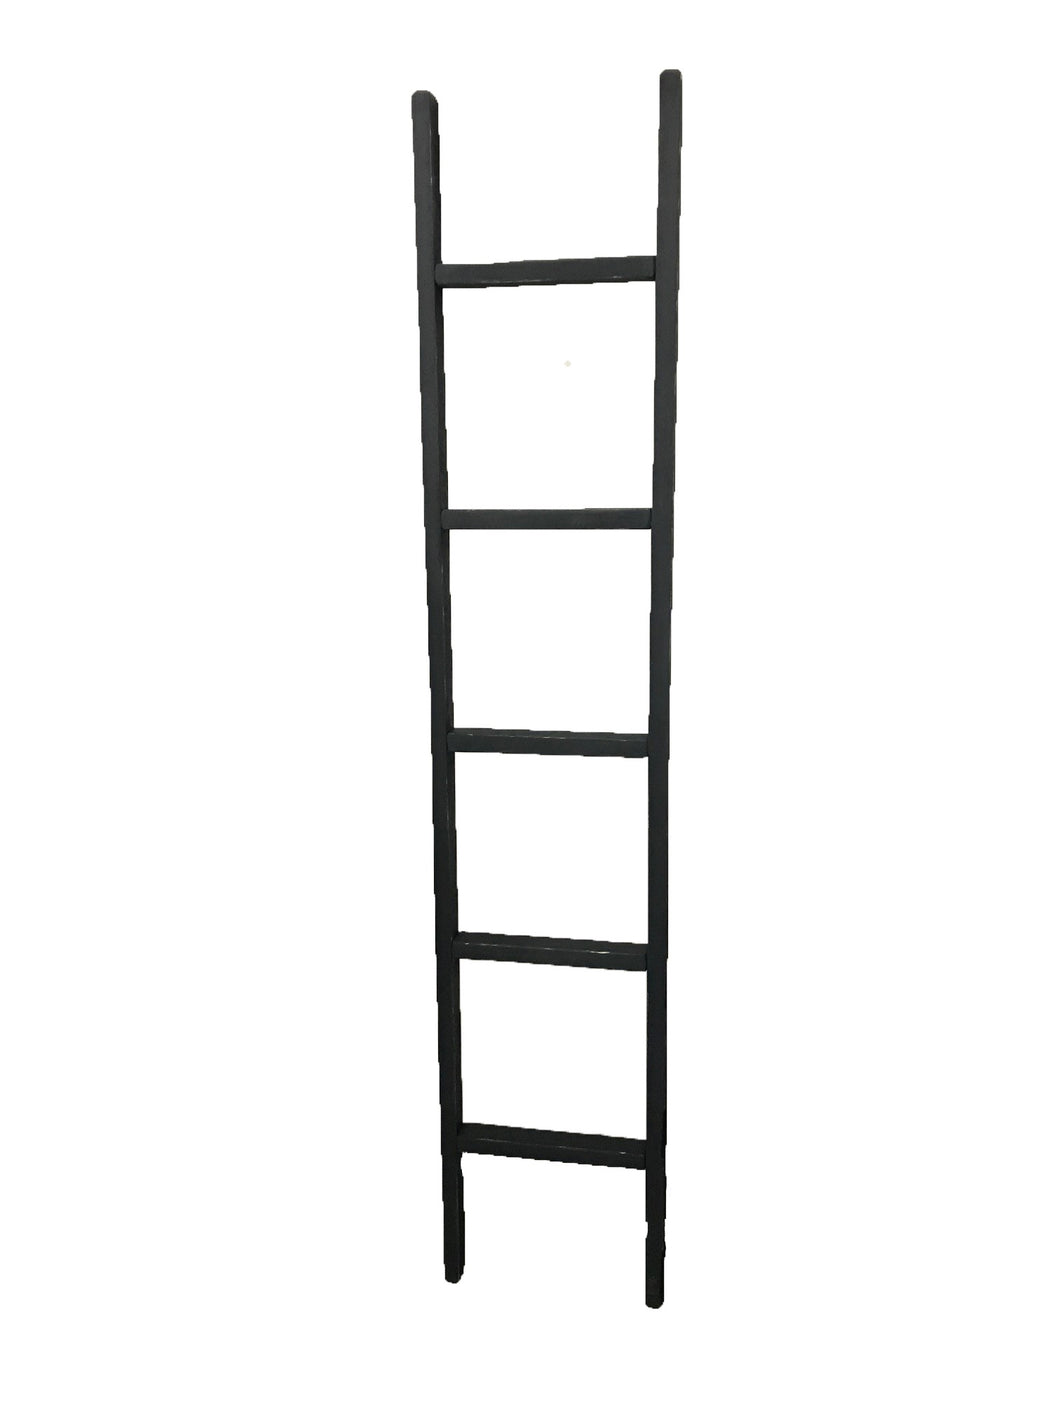 t&p -  timber - 6' ladder  w/5 rungs - BLUE  - 6ft x 14”